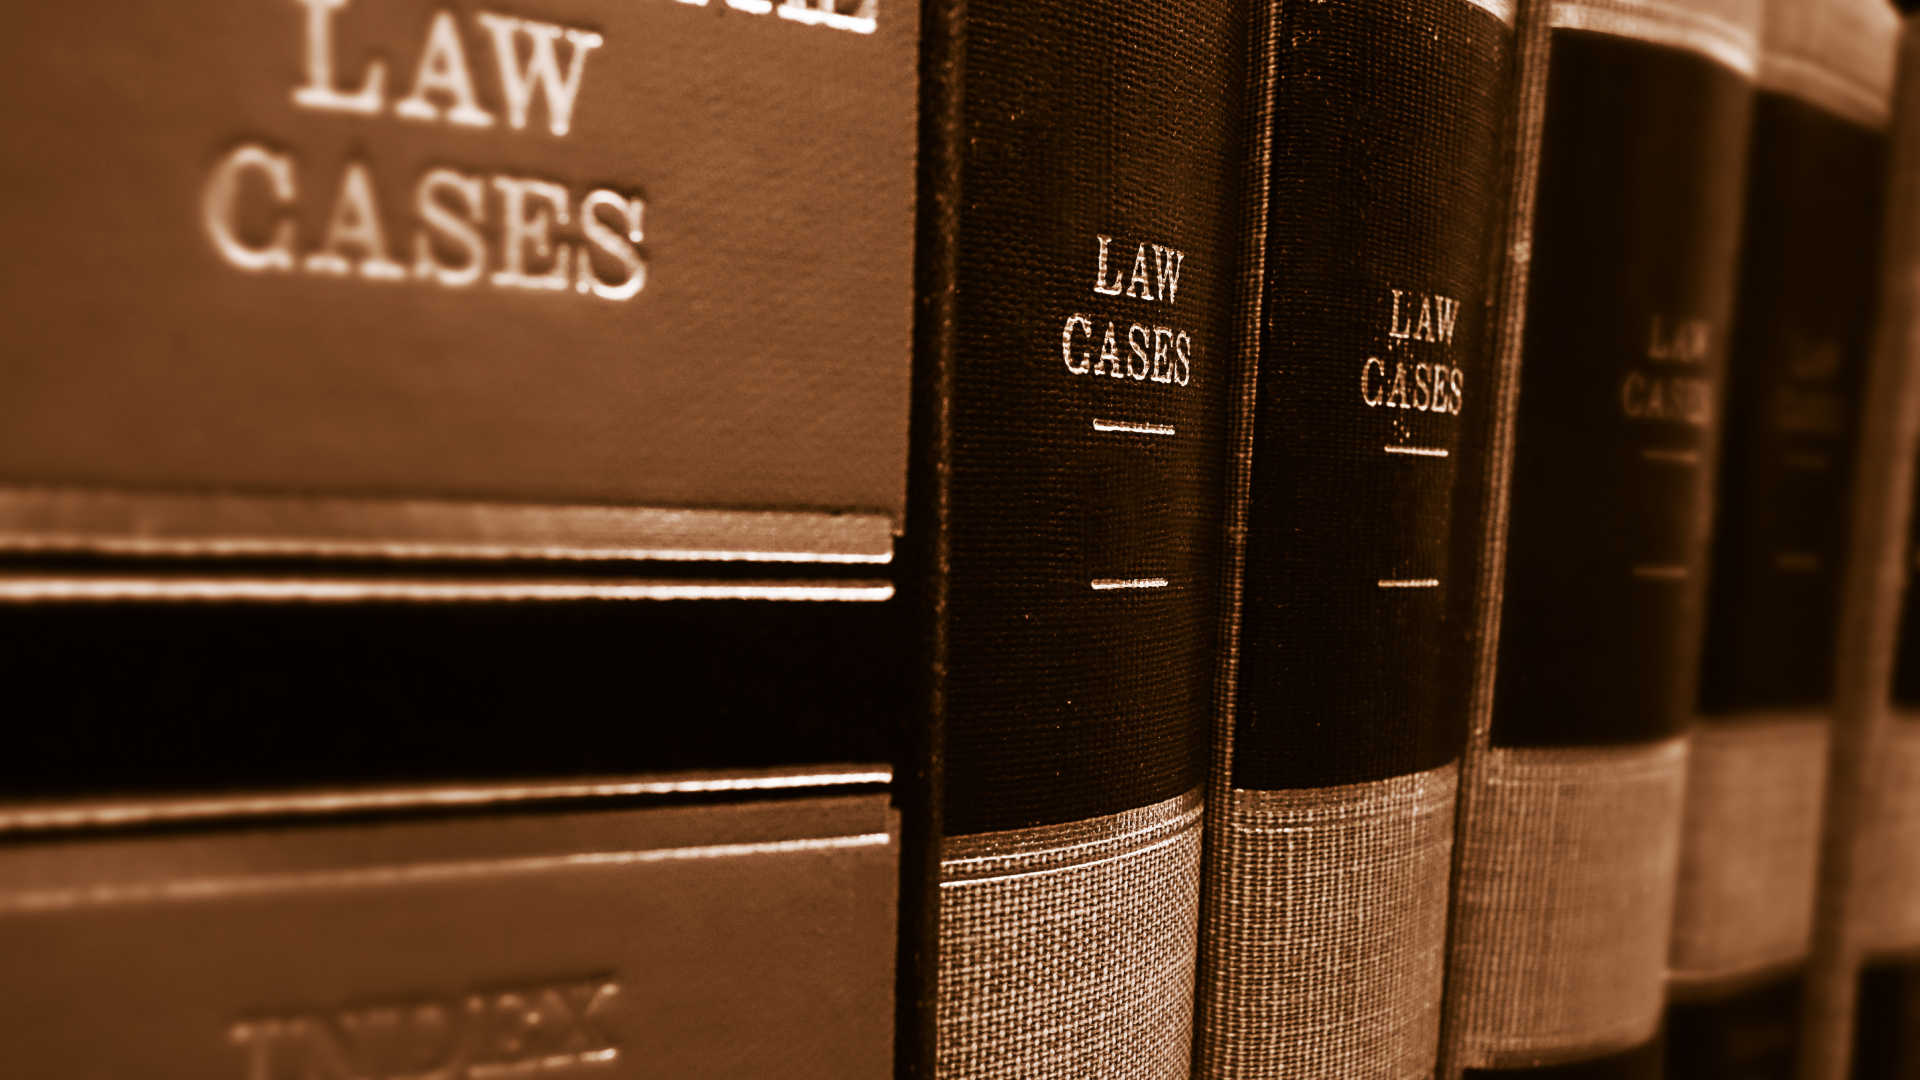 Case law books